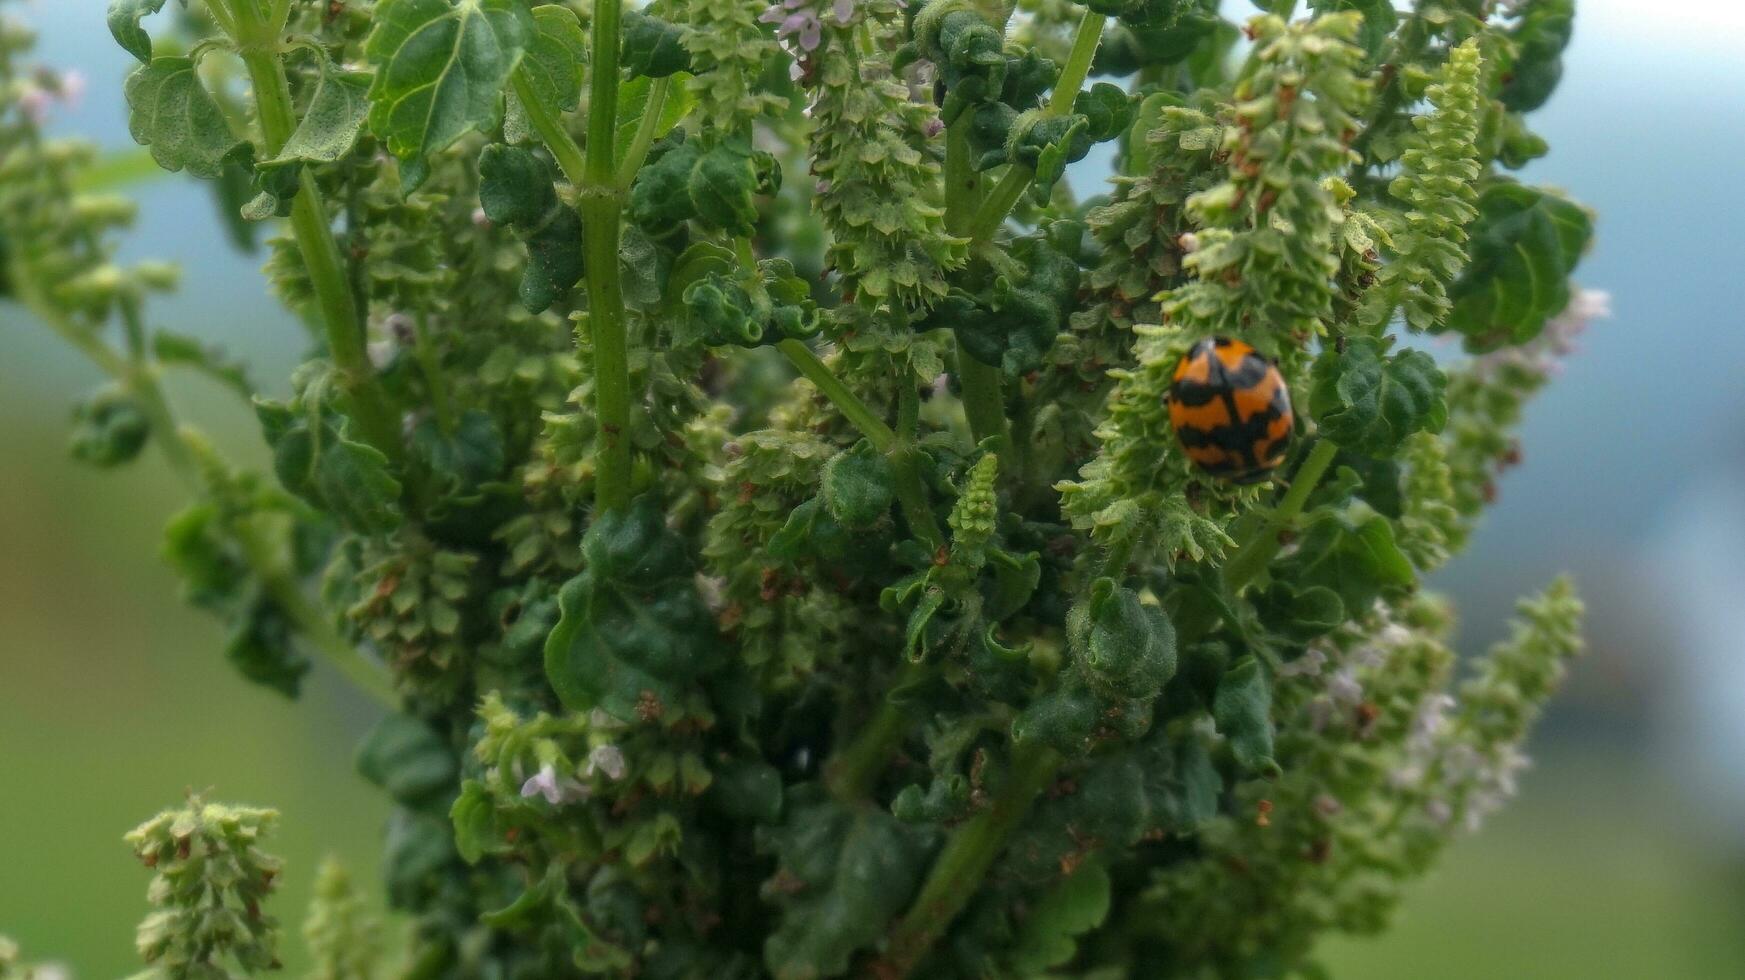 a ladybug in a green garden photo